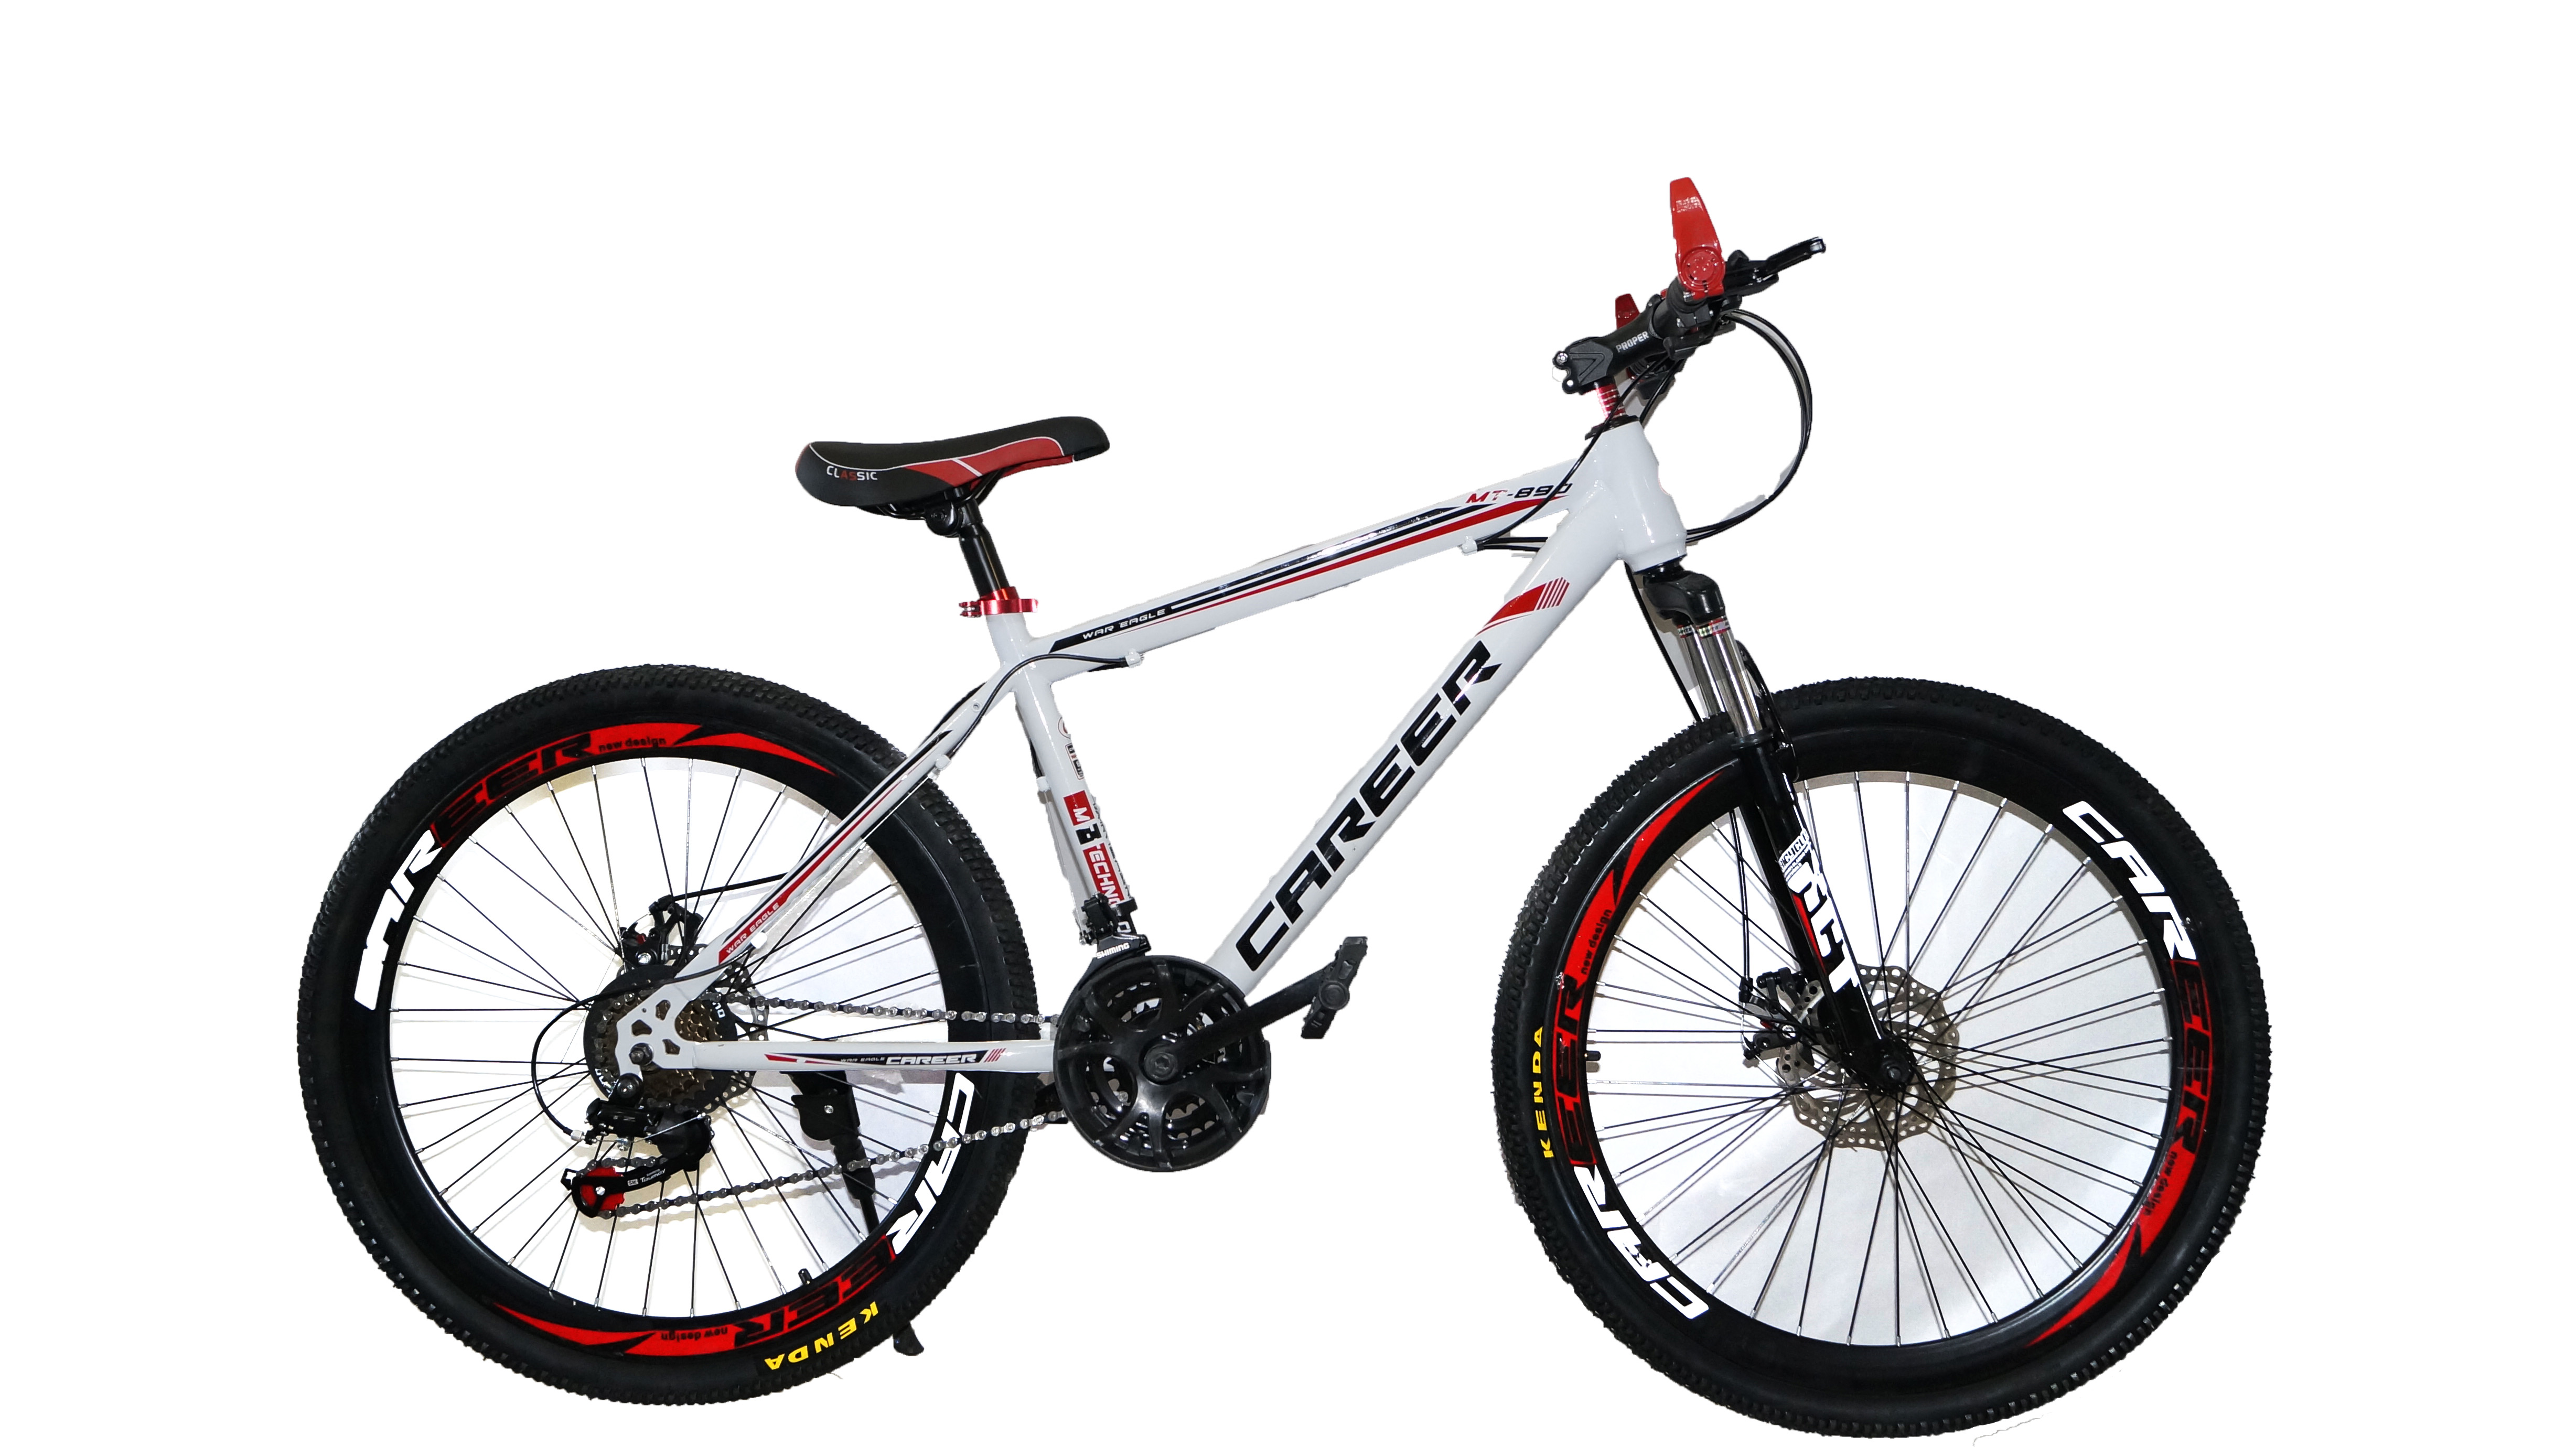 Велосипед 18 авито. Велосипед Energy e01, 26 дюймов, 21 скорость, (черно-красный). Велосипед Dream c680. Велосипед career c680 характеристики. Велосипед Drive Dr-797.